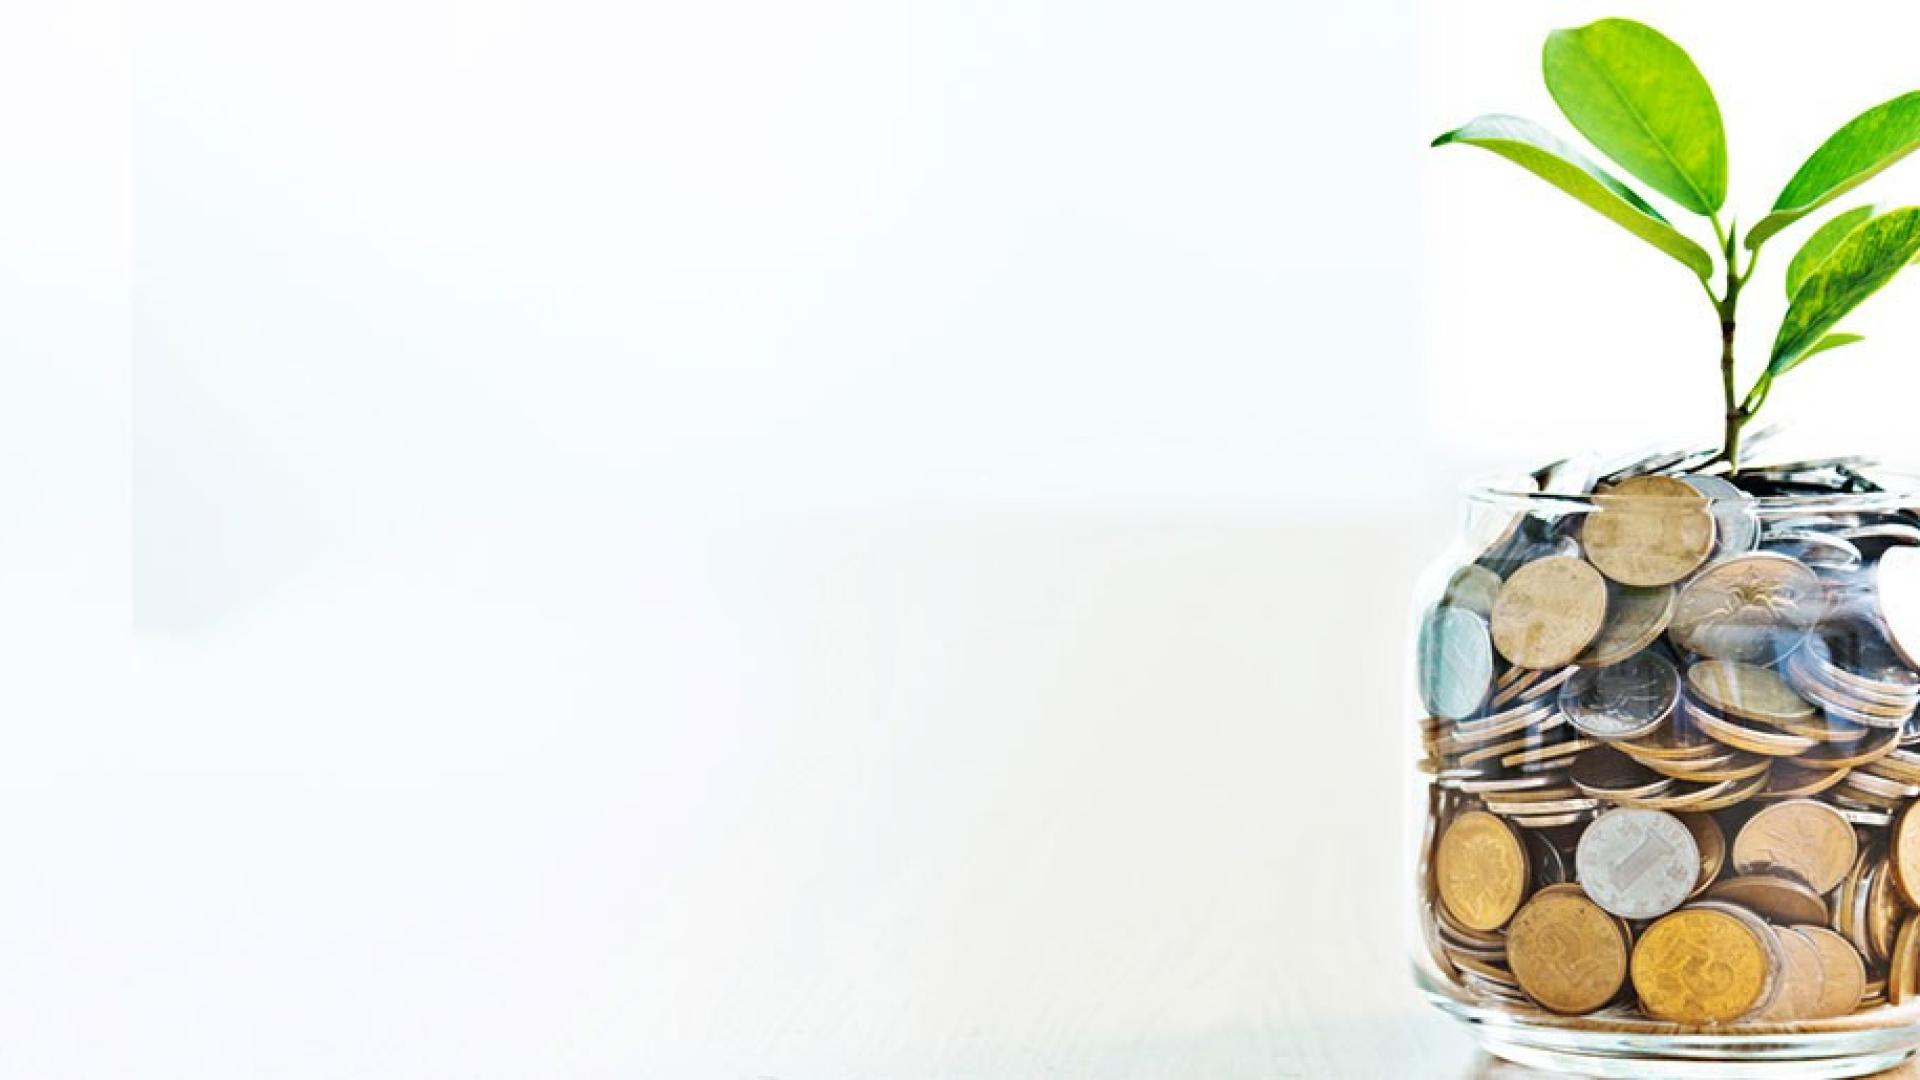 Ein Glas ist bis zum oberen Rand mit Geldmünzen gefüllt und aus dem Glas wächst eine Pflanze.